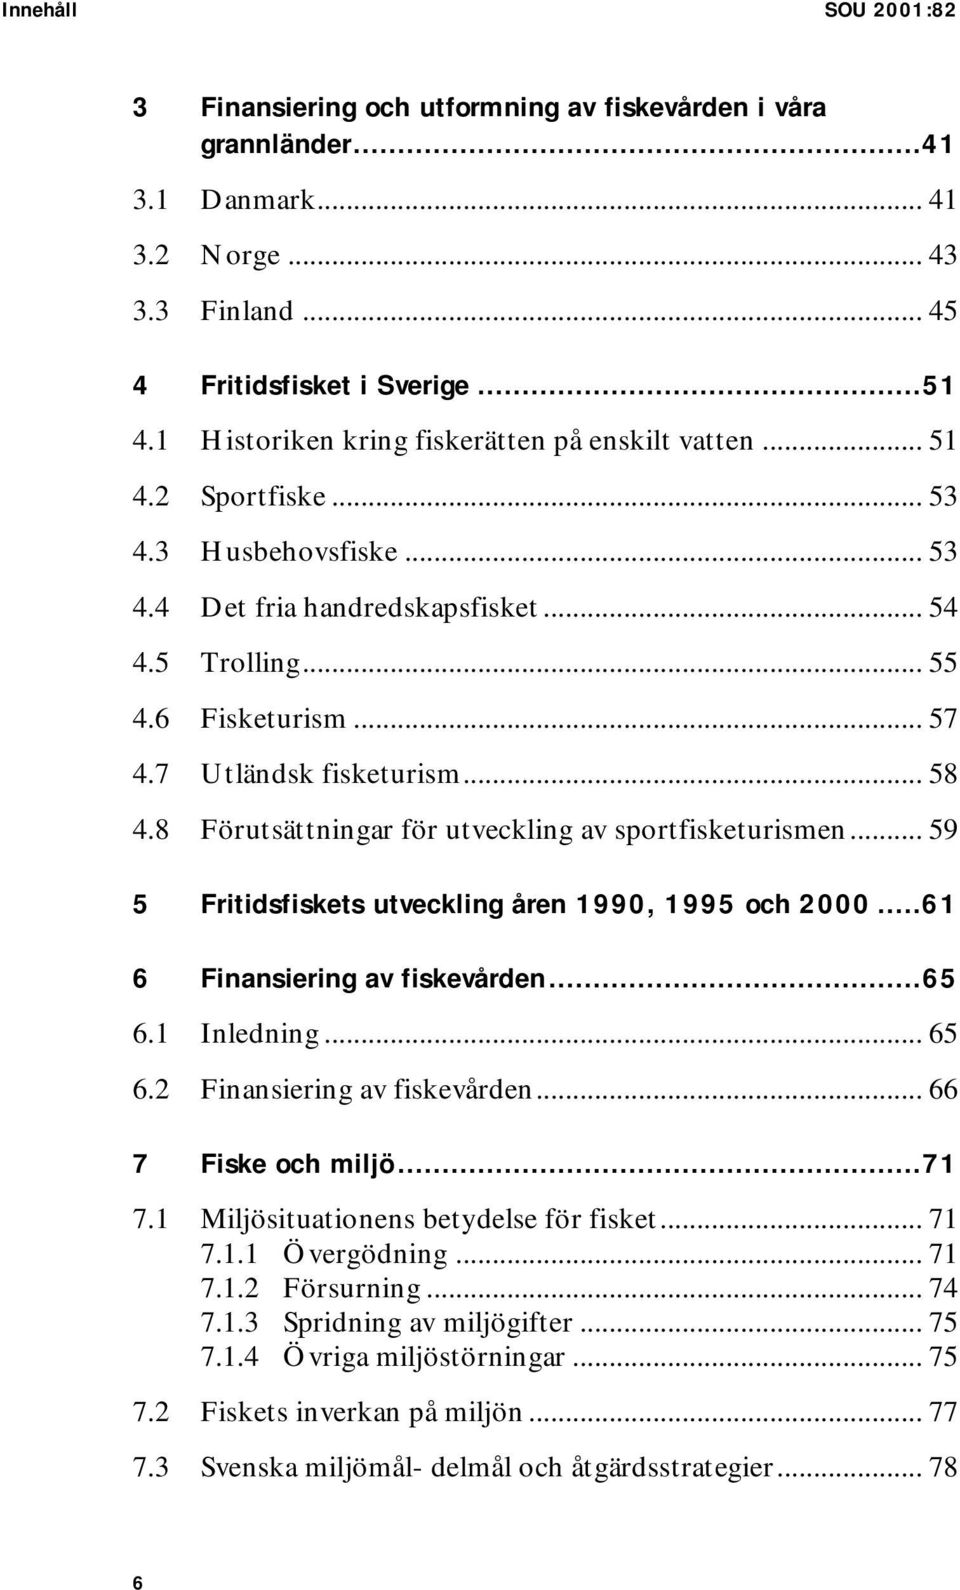 7 Utländsk fisketurism... 58 4.8 Förutsättningar för utveckling av sportfisketurismen... 59 5 Fritidsfiskets utveckling åren 1990, 1995 och 2000...61 6 Finansiering av fiskevården...65 6.1 Inledning.